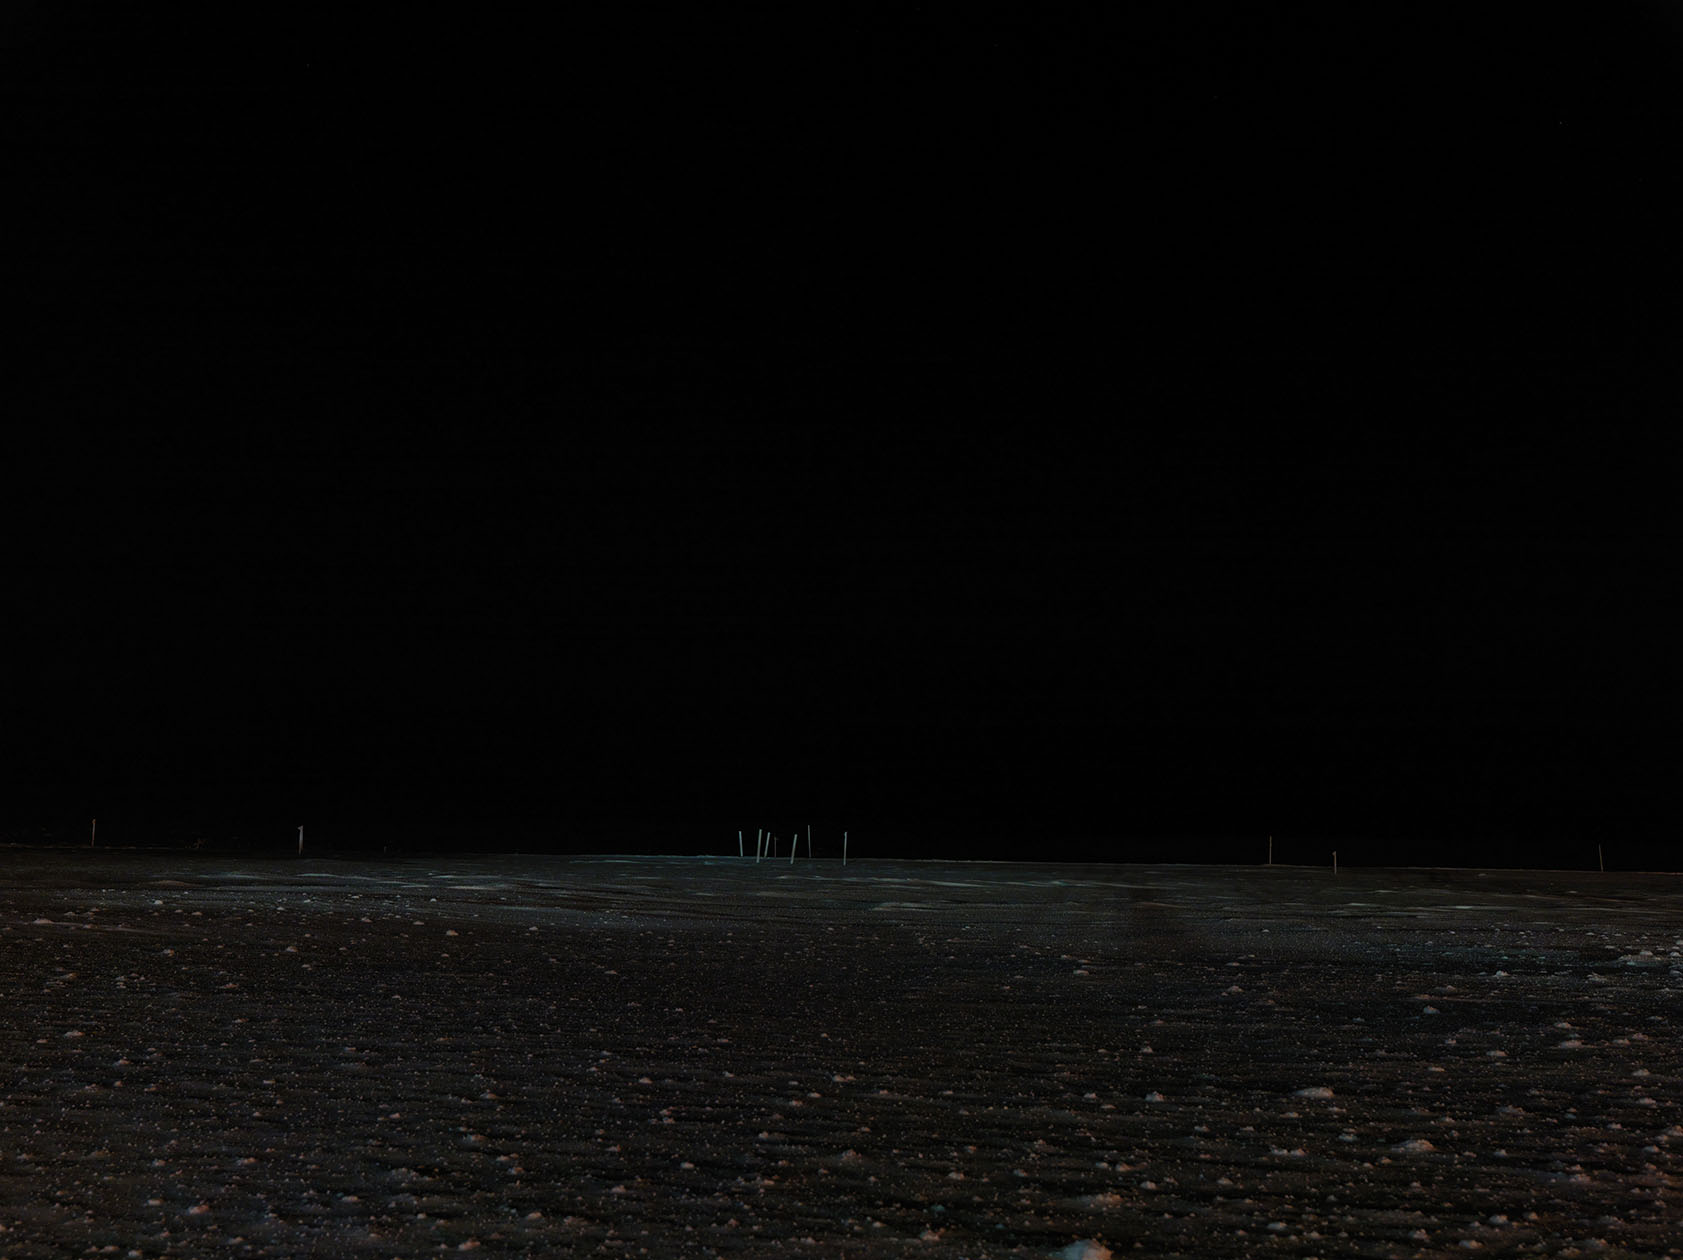 Polar Night, 88 x 118 cm, 2013
